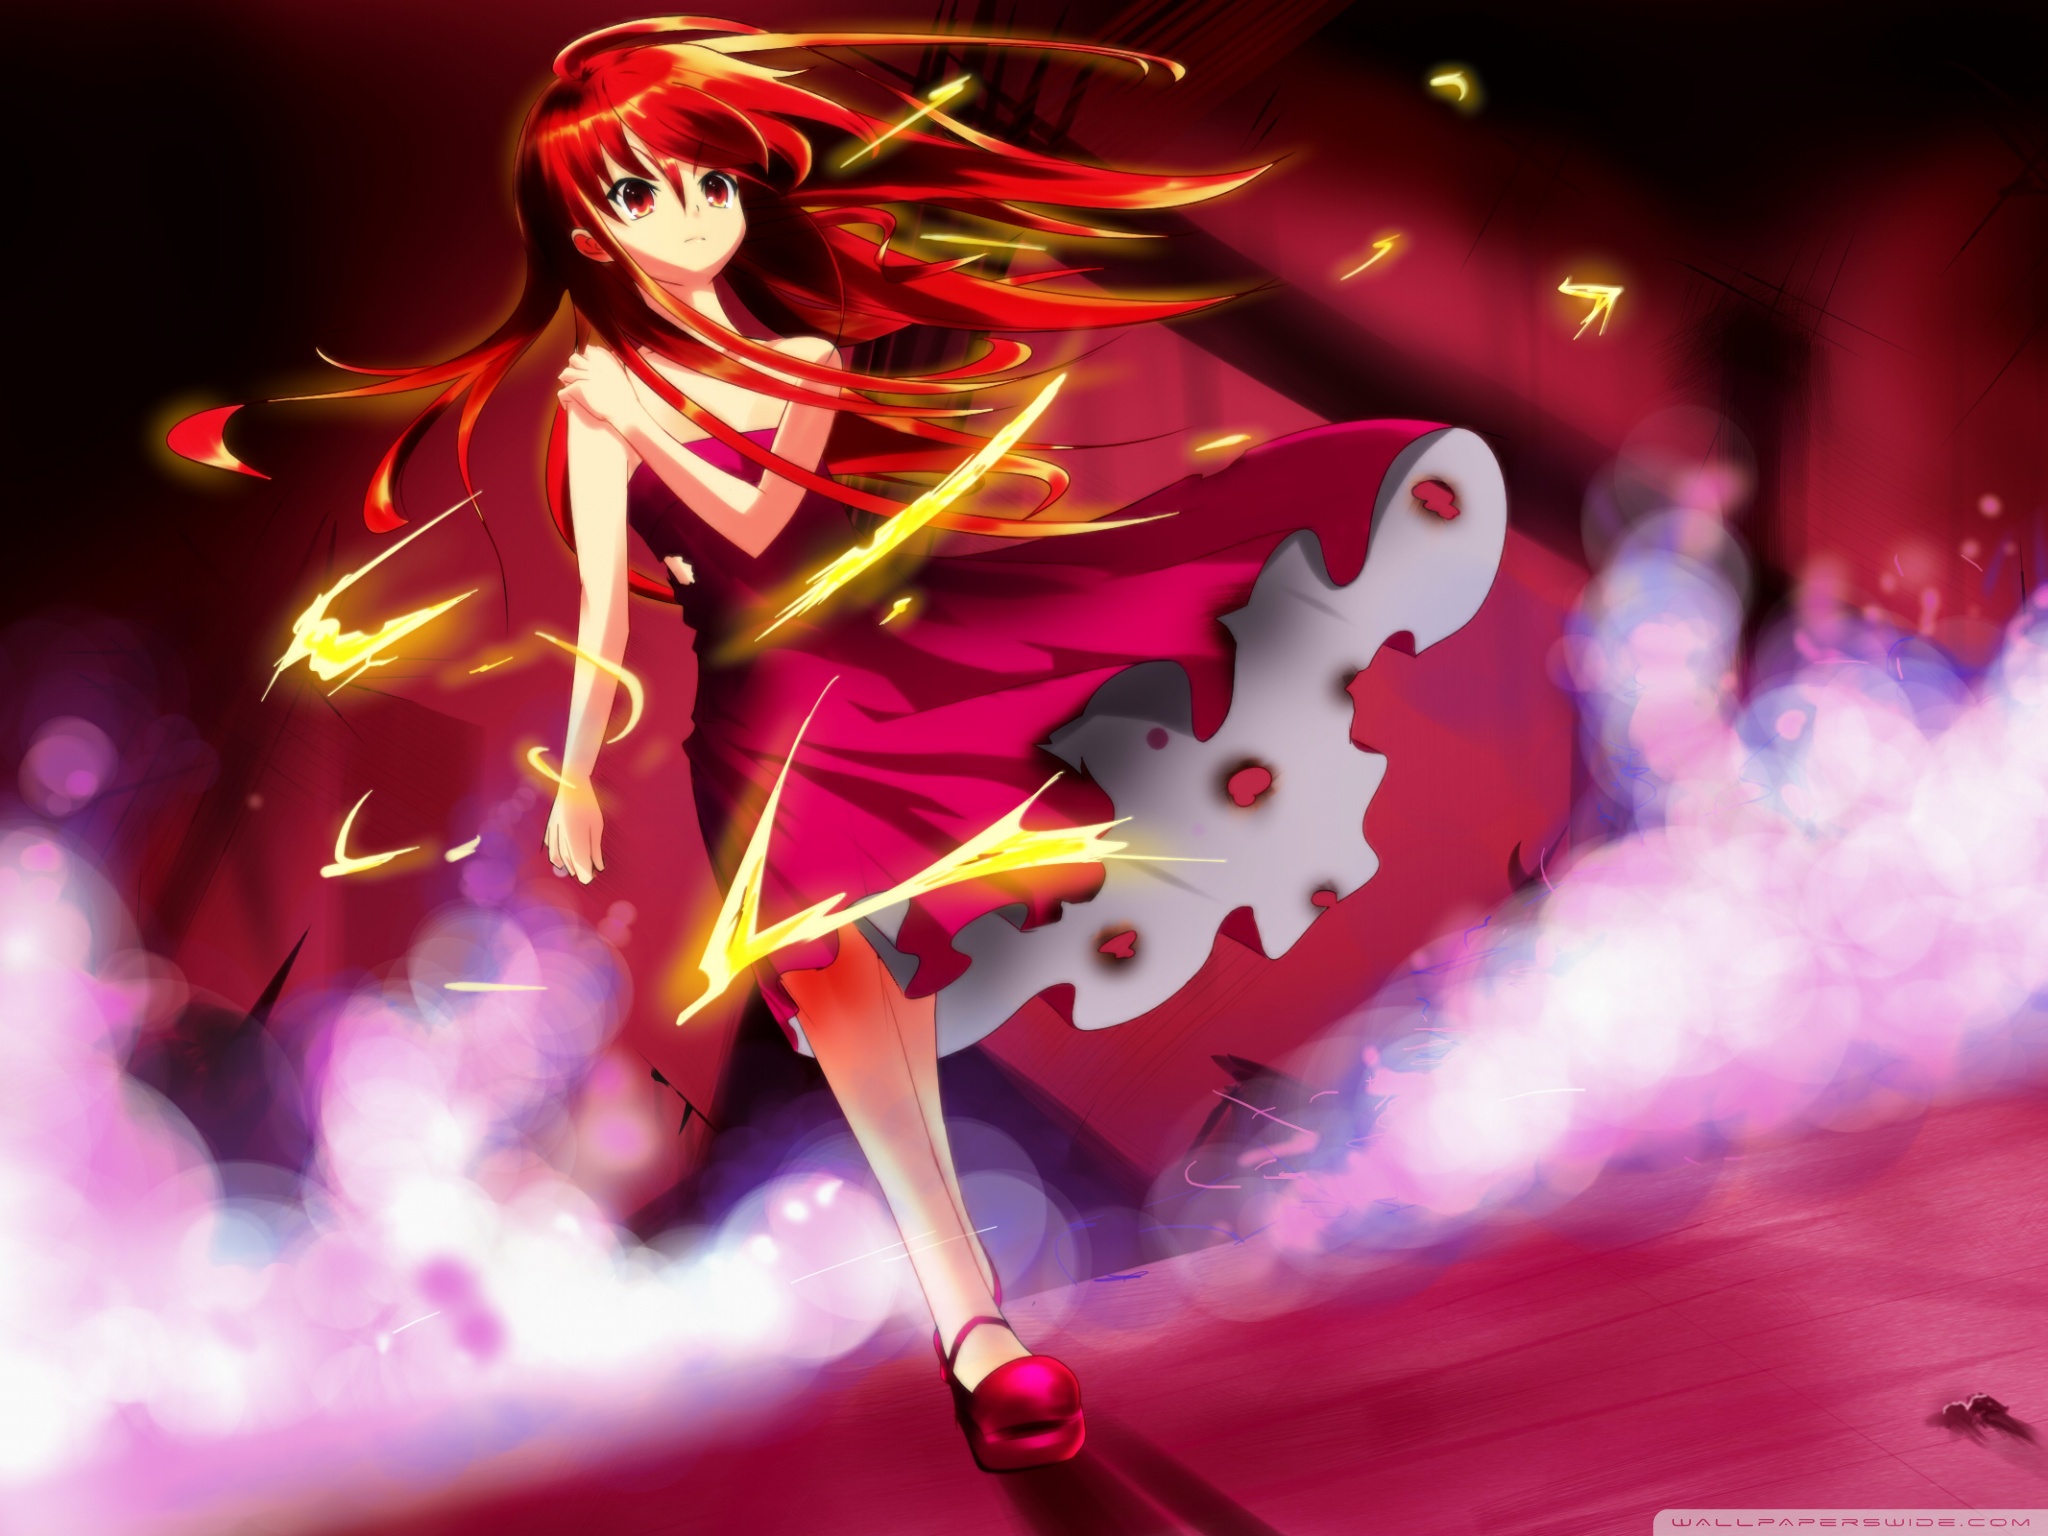 Anime Magic Girl Ultra HD Desktop Background Wallpaper for